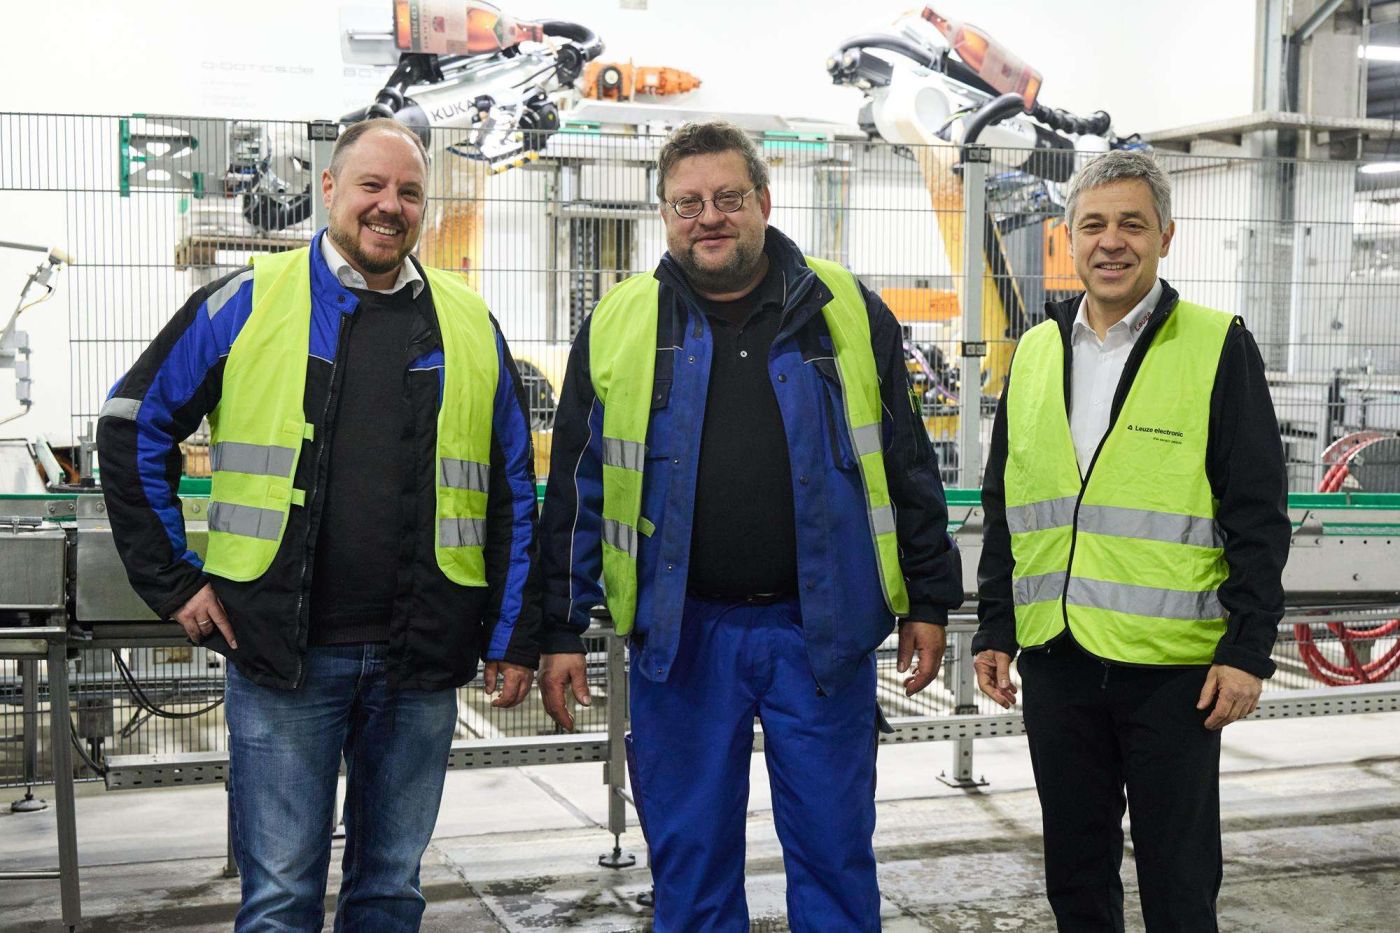 Sorgen für effiziente Abläufe in der Abfüllung (von links): Florian Fahr, Leiter Technik (Dinkelacker), Frank Karle, Leiter Elektrowerkstatt (Dinkelacker), und Andreas Eberle, Local Industry Manager Packaging (Leuze).